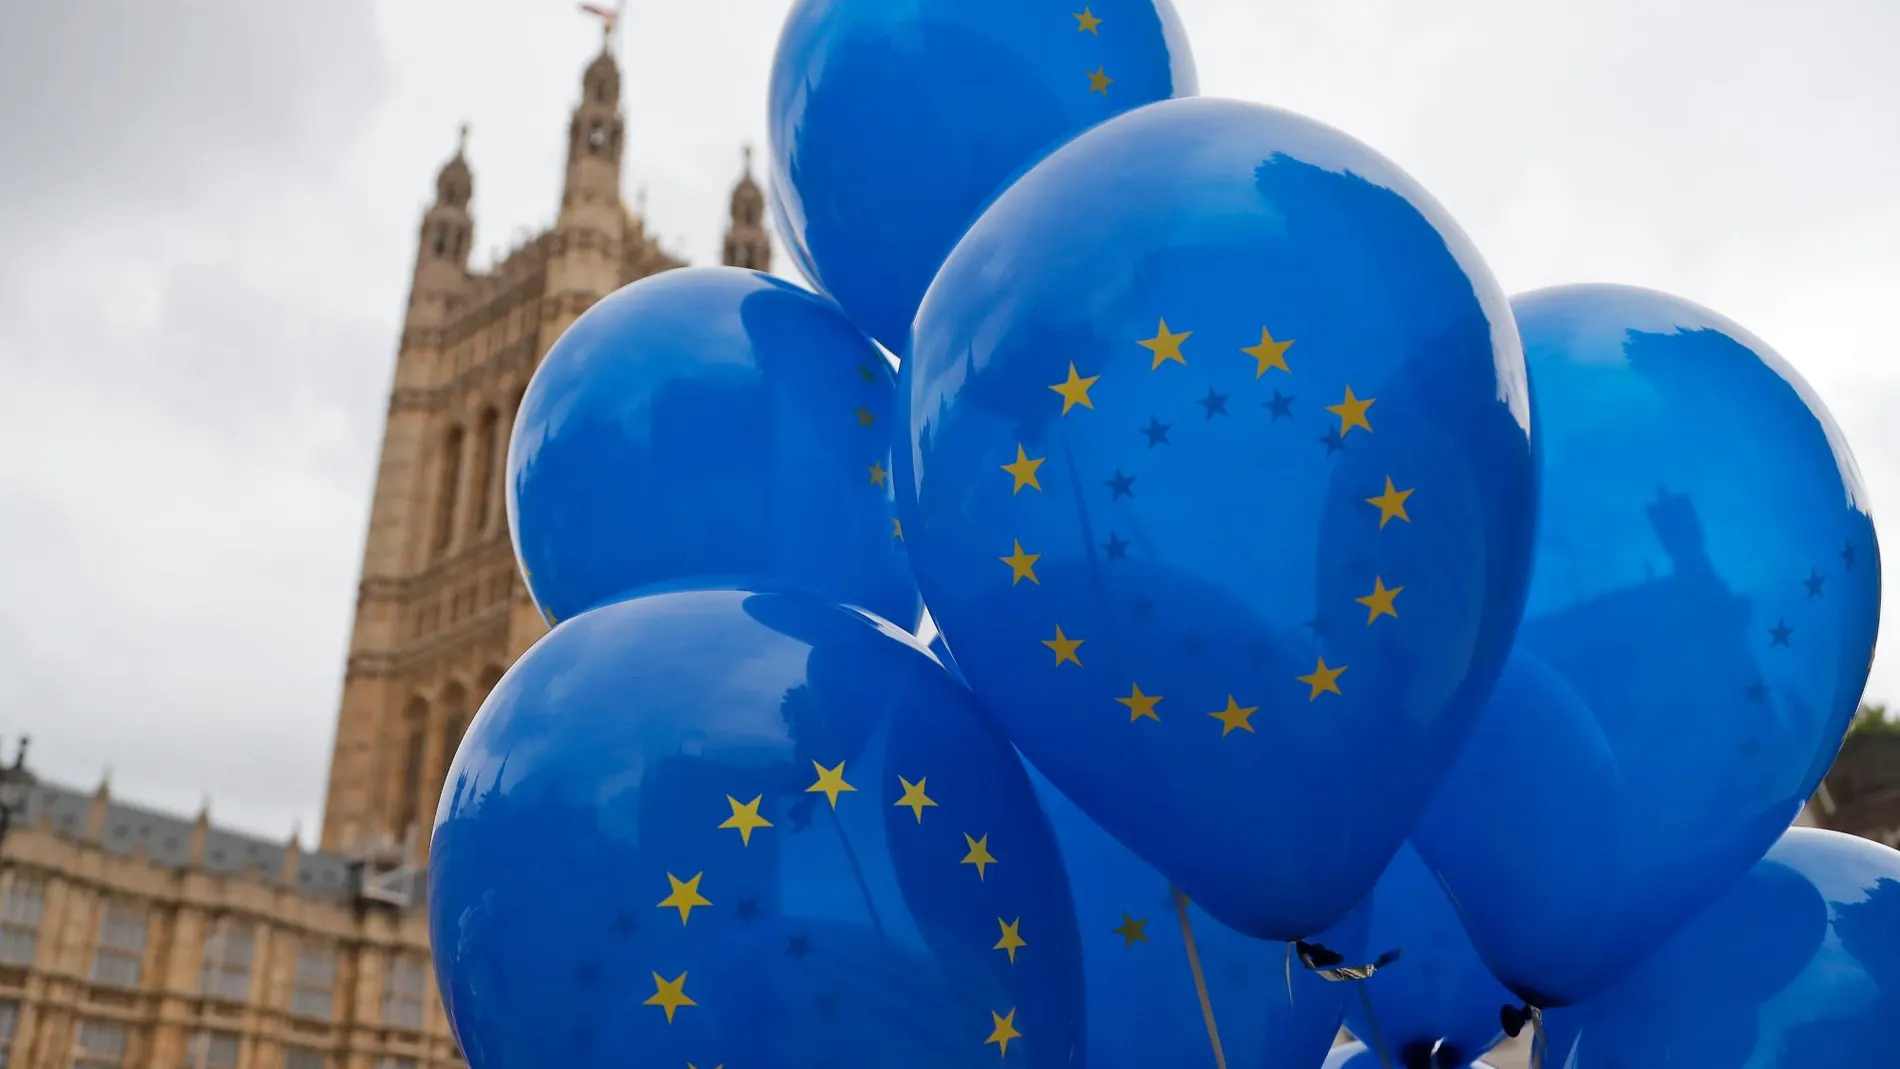 Los globos de un manifestante a favor de la UE, ayer, frente al Parlamento británico/ AP